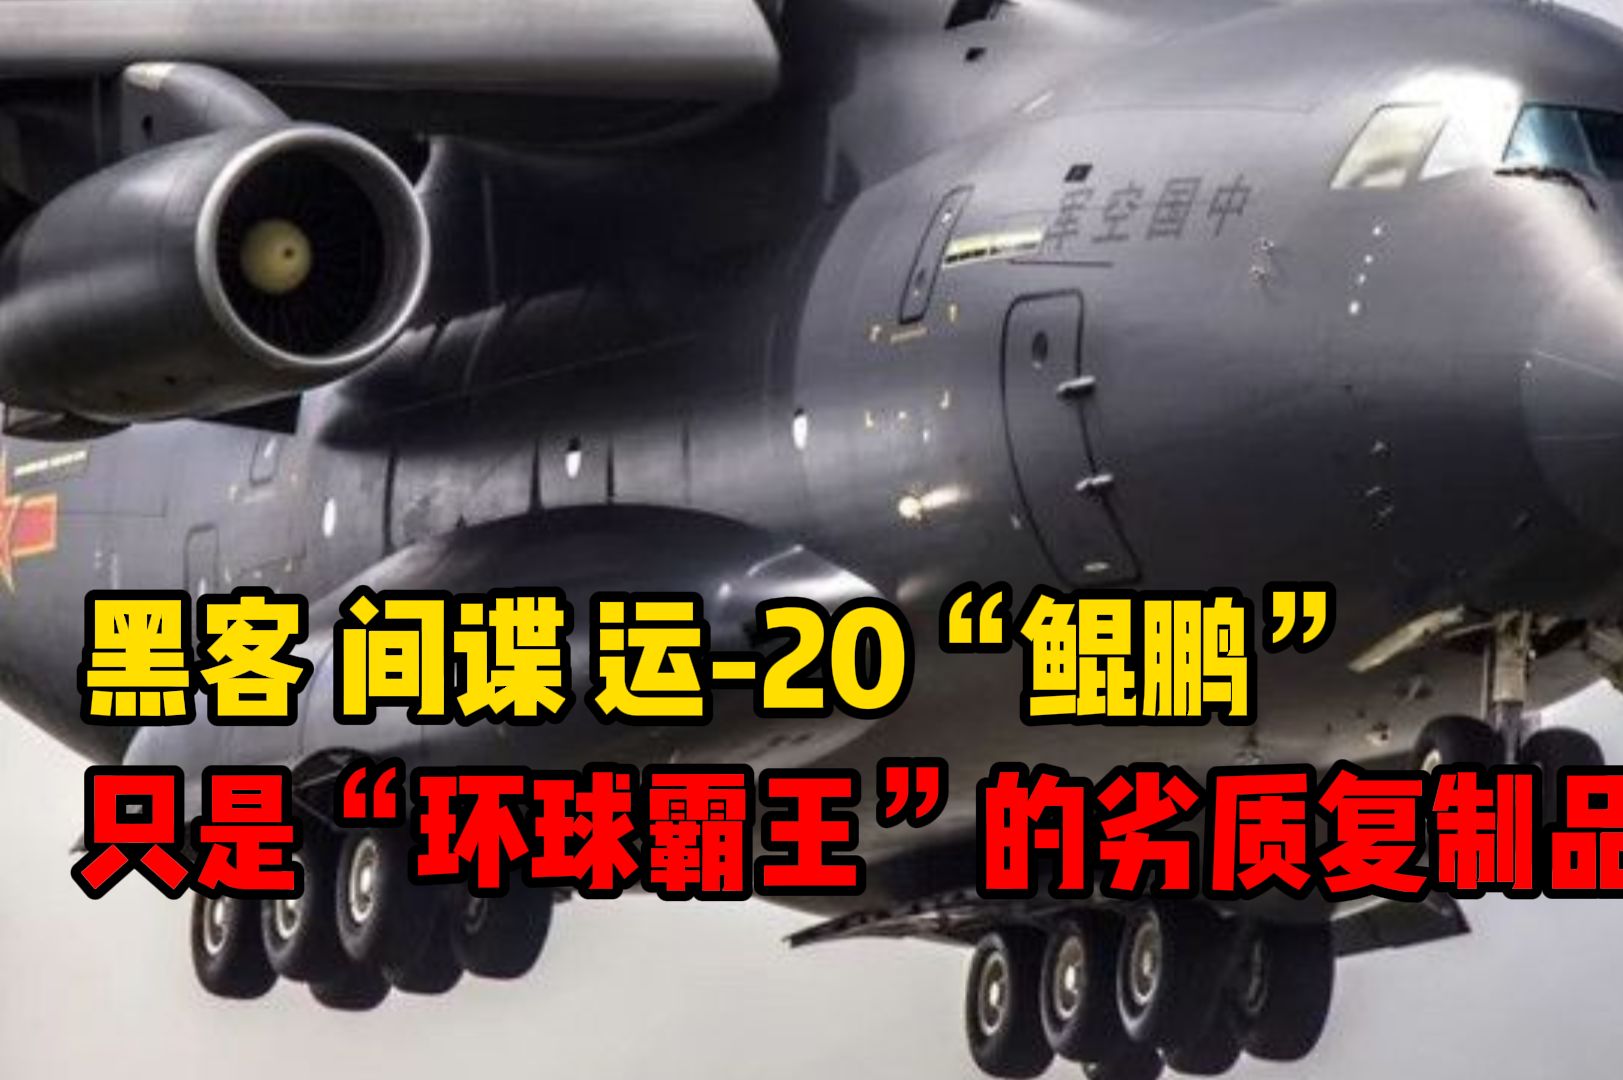 自诞生之初便备受争论，运-20只是C-17环球霸王的劣质“复制品”？